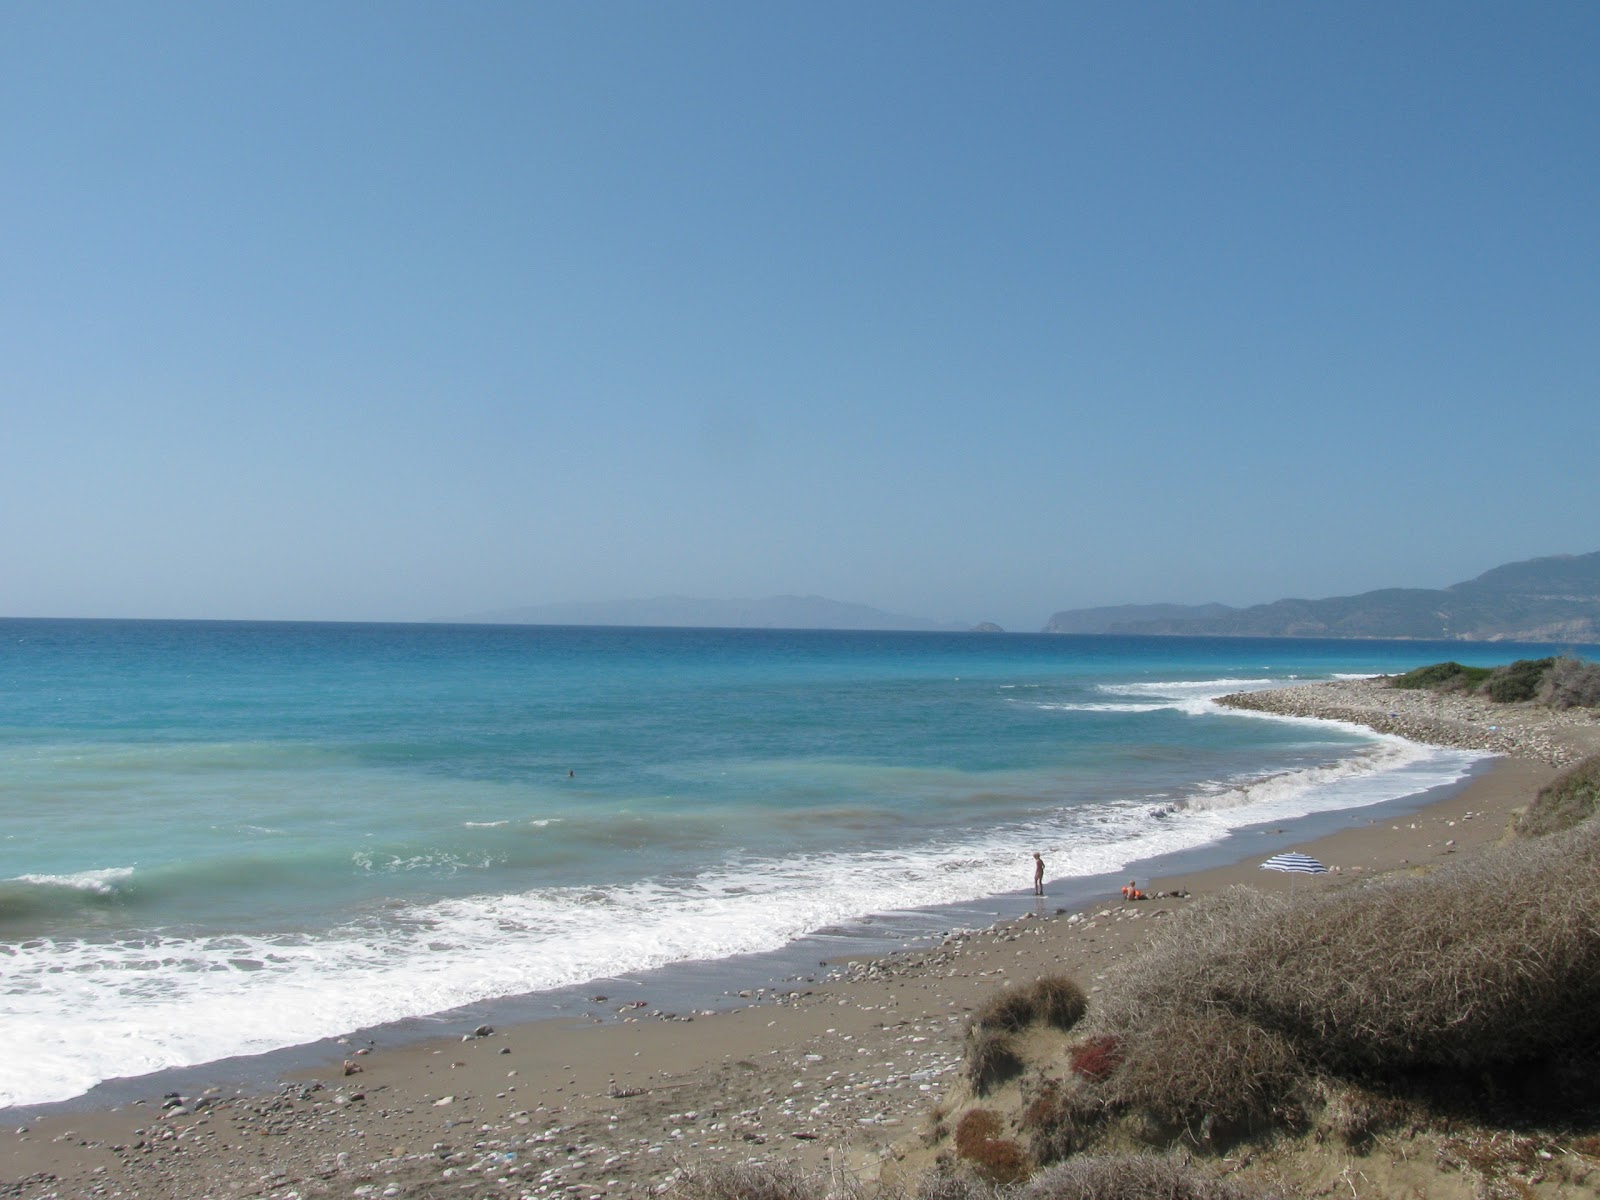 Fotografie cu Wild beach III cu o suprafață de apă albastră închisă